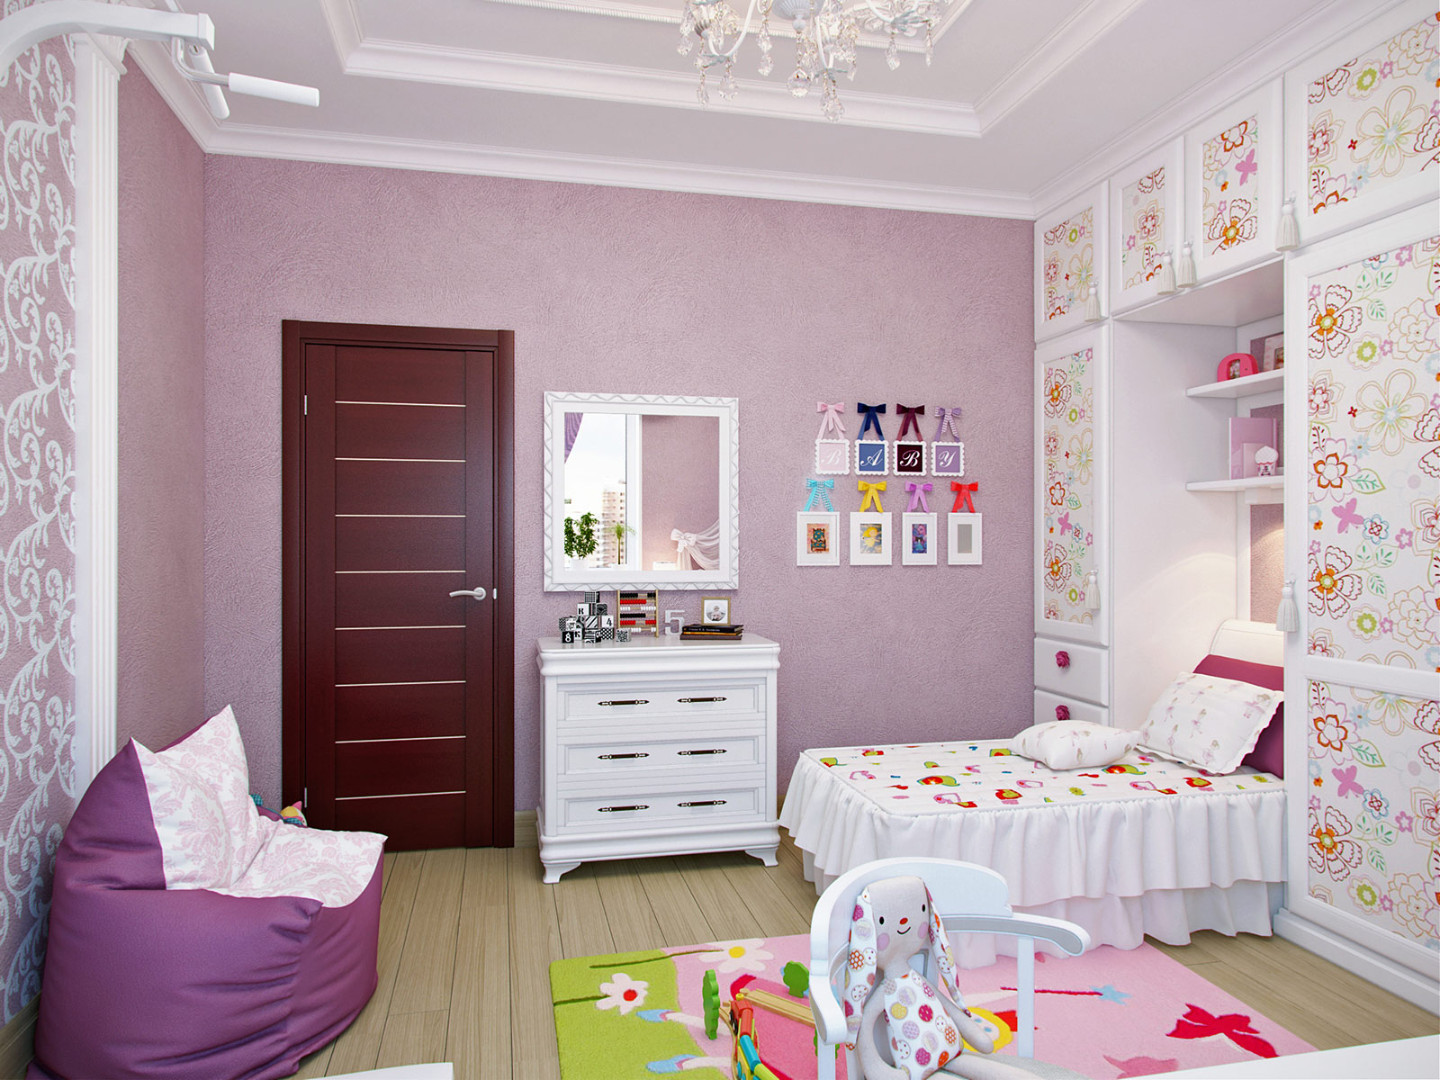 Бюджетная детская комната, дизайн небольшой комнаты для мальчика и девочки, планировка детской